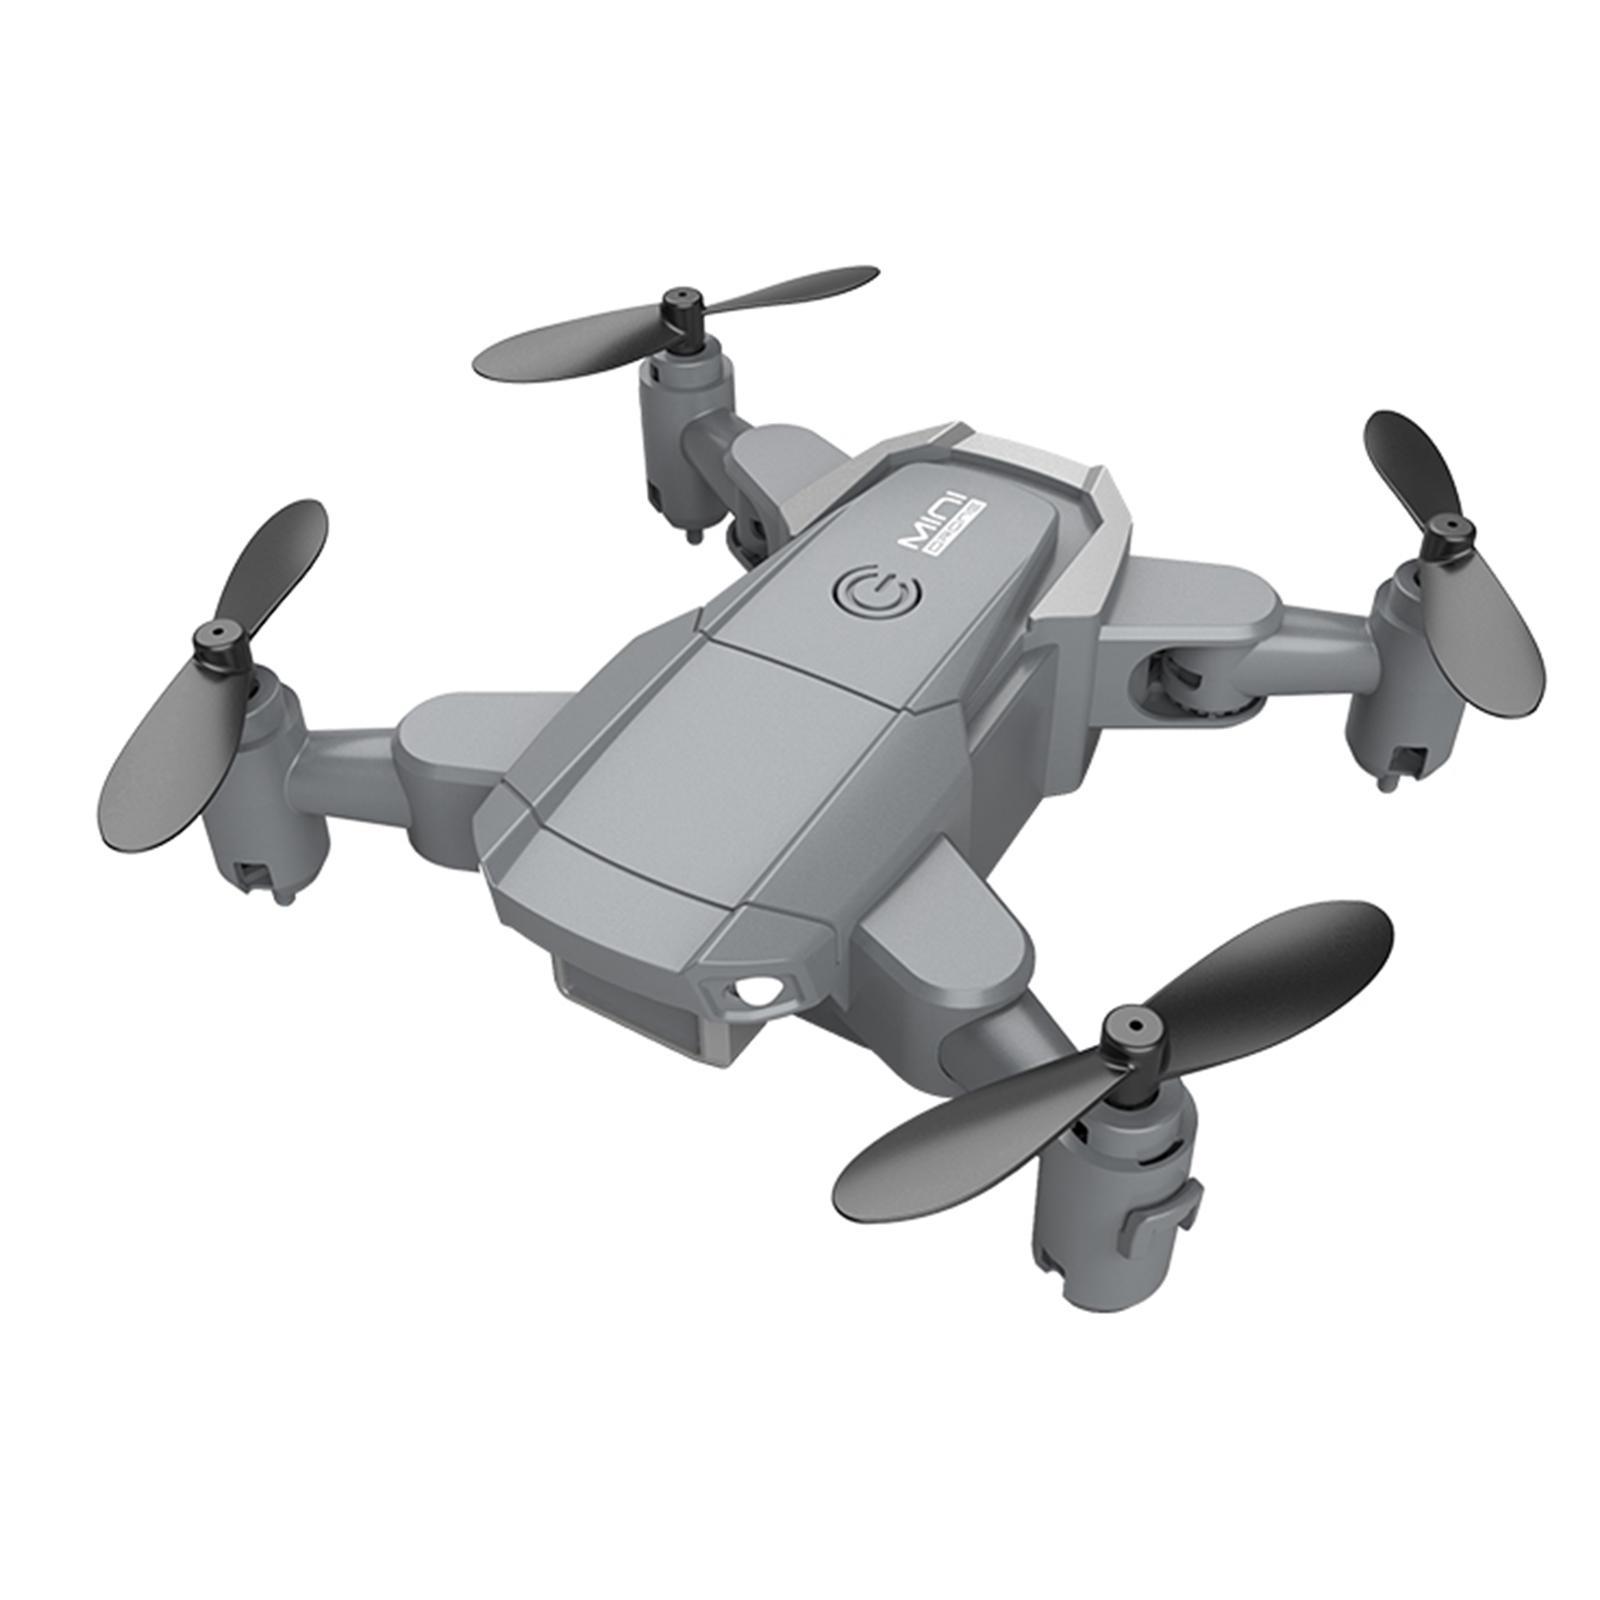 KY905 Mini Drone 4K/1080P Camera Foldable RC Quadcopter No Camera